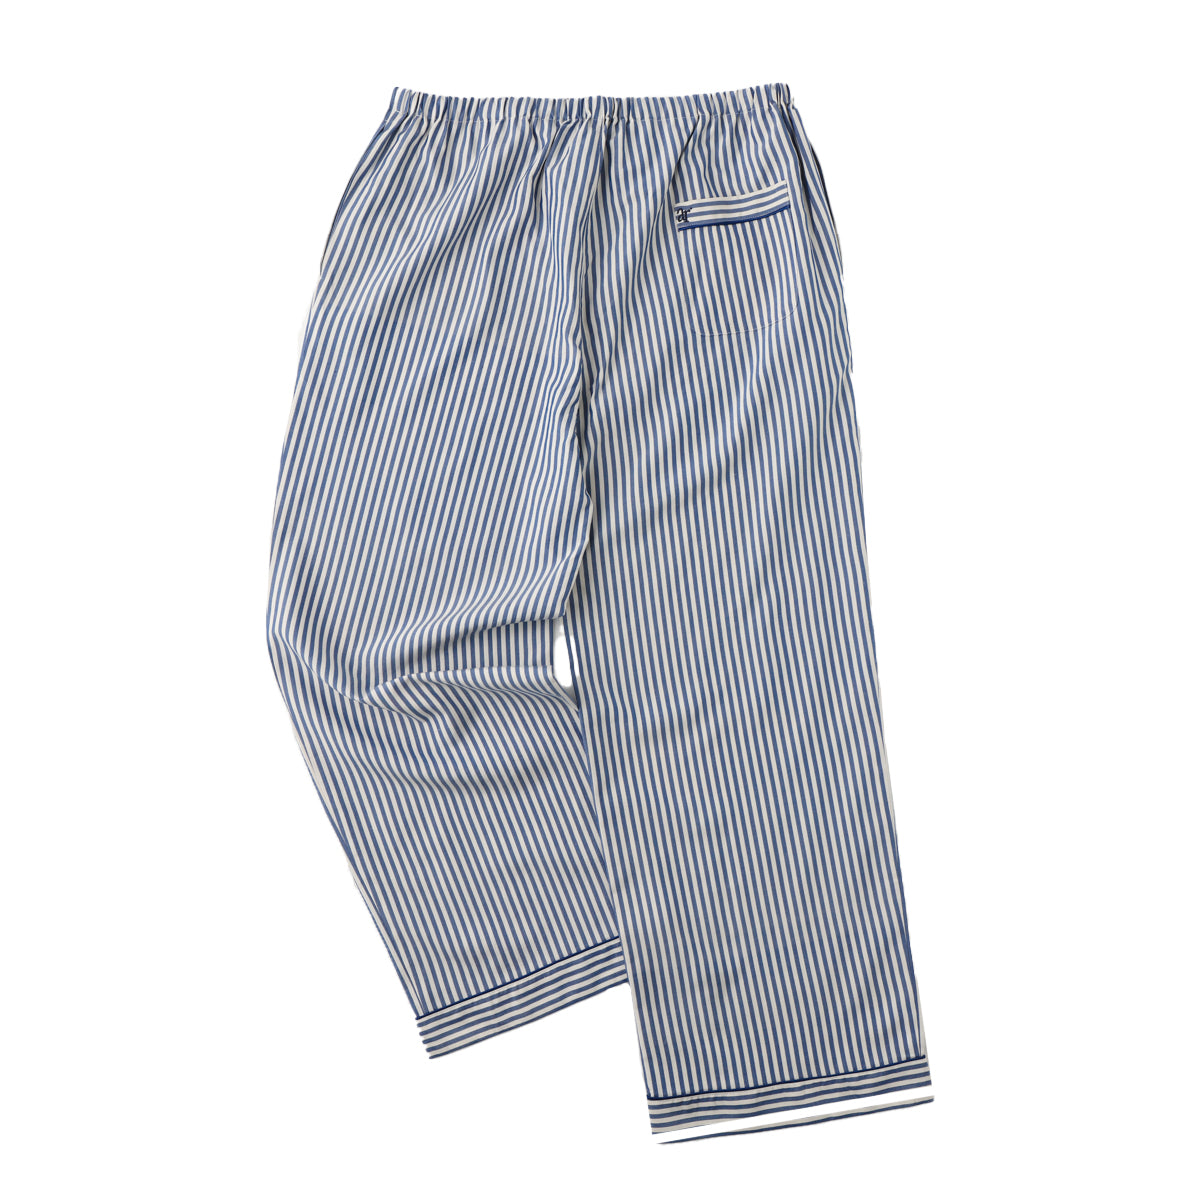 Silk Striped Pajama Set (NAVY)